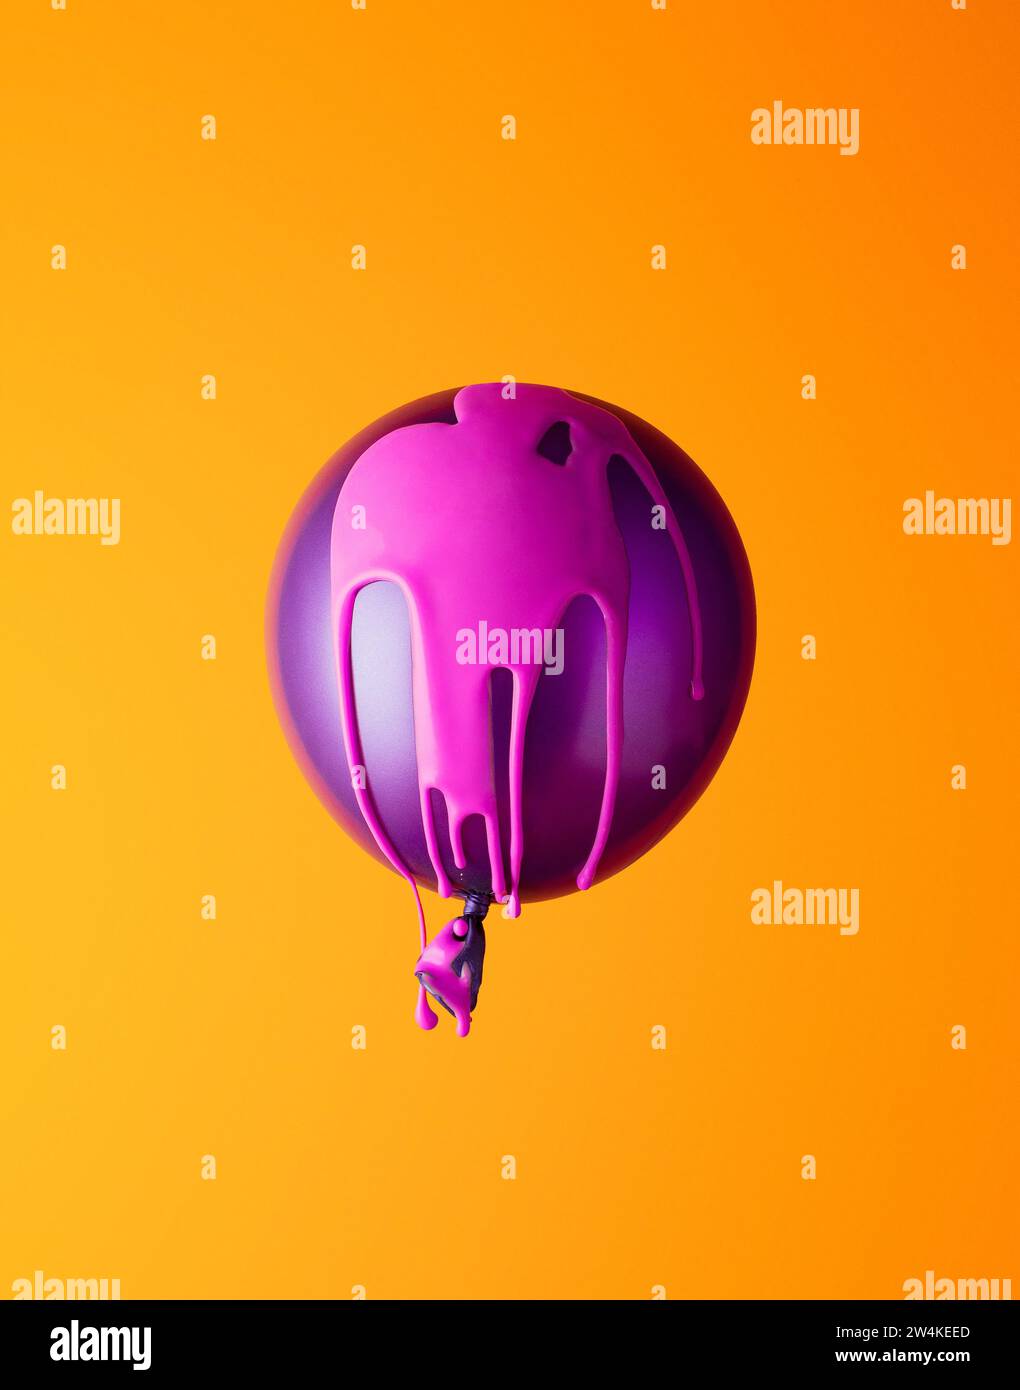 Ballon di elio ricoperto di vernice rosa su sfondo arancione. Minimo. Foto Stock